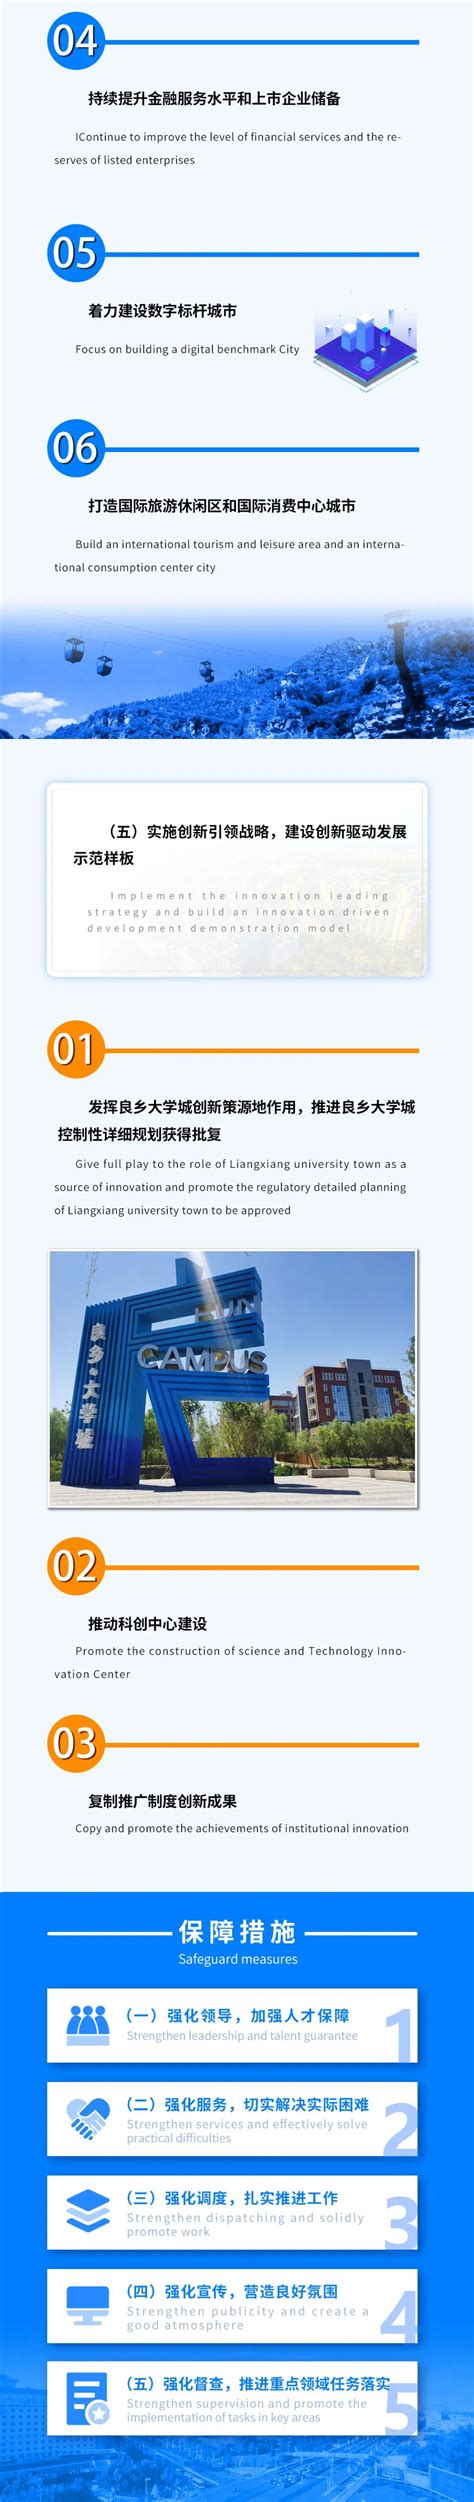 房山区"两区"重点园区北京高端制造业基地2023年发展提升措施一图读懂